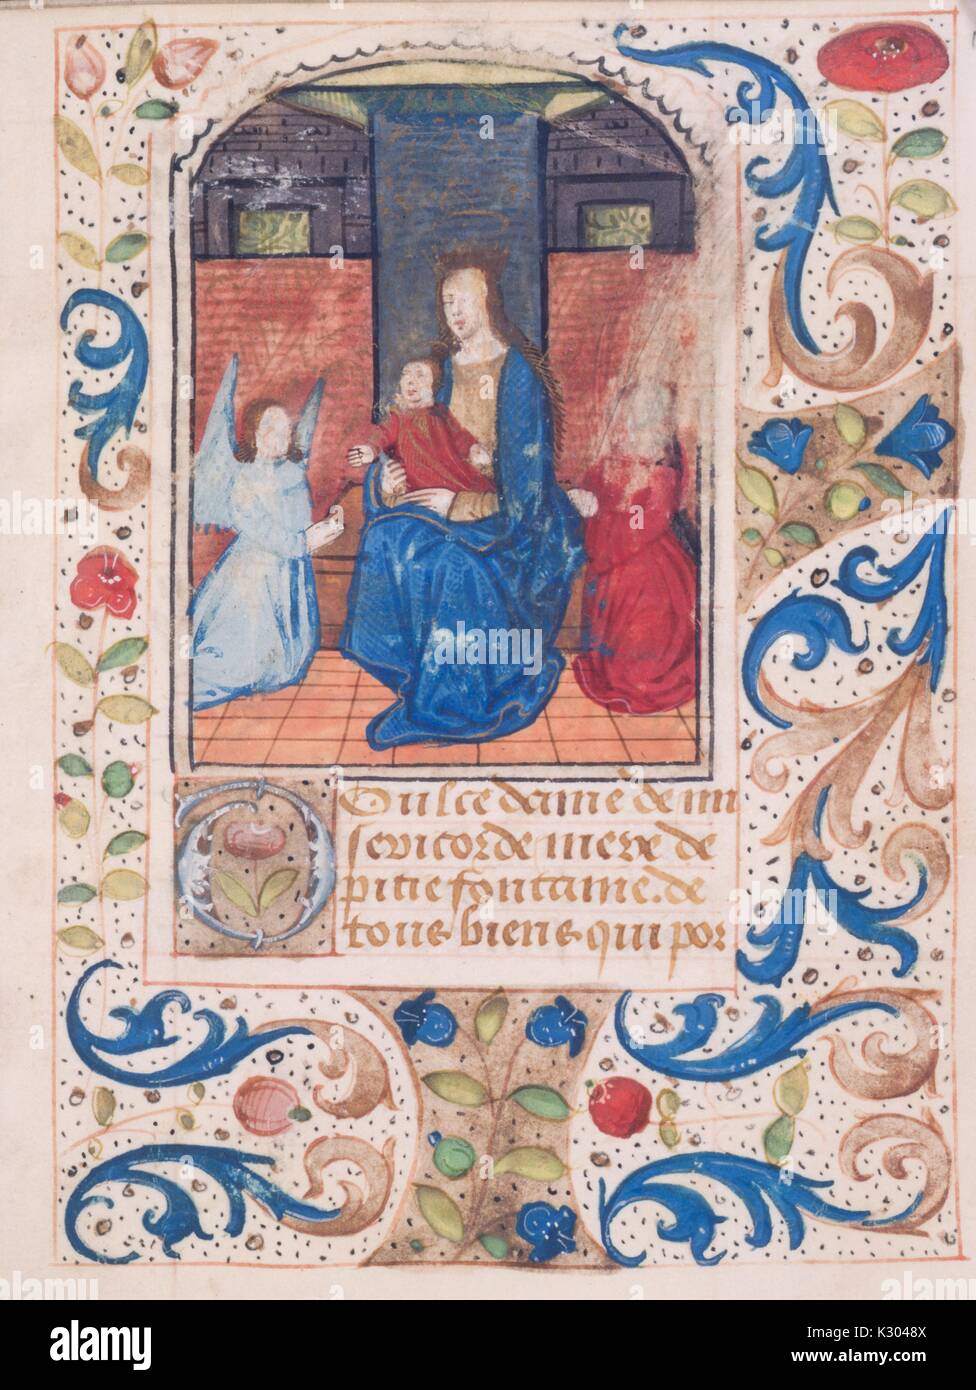 Bilderhandschrift Seite der Darstellung der seligen Jungfrau Holding Baby Jesus, von der "ténéré et credere mich faciat", aus dem 15. Jahrhundert Latein Buch der Stunden, 2013. Stockfoto